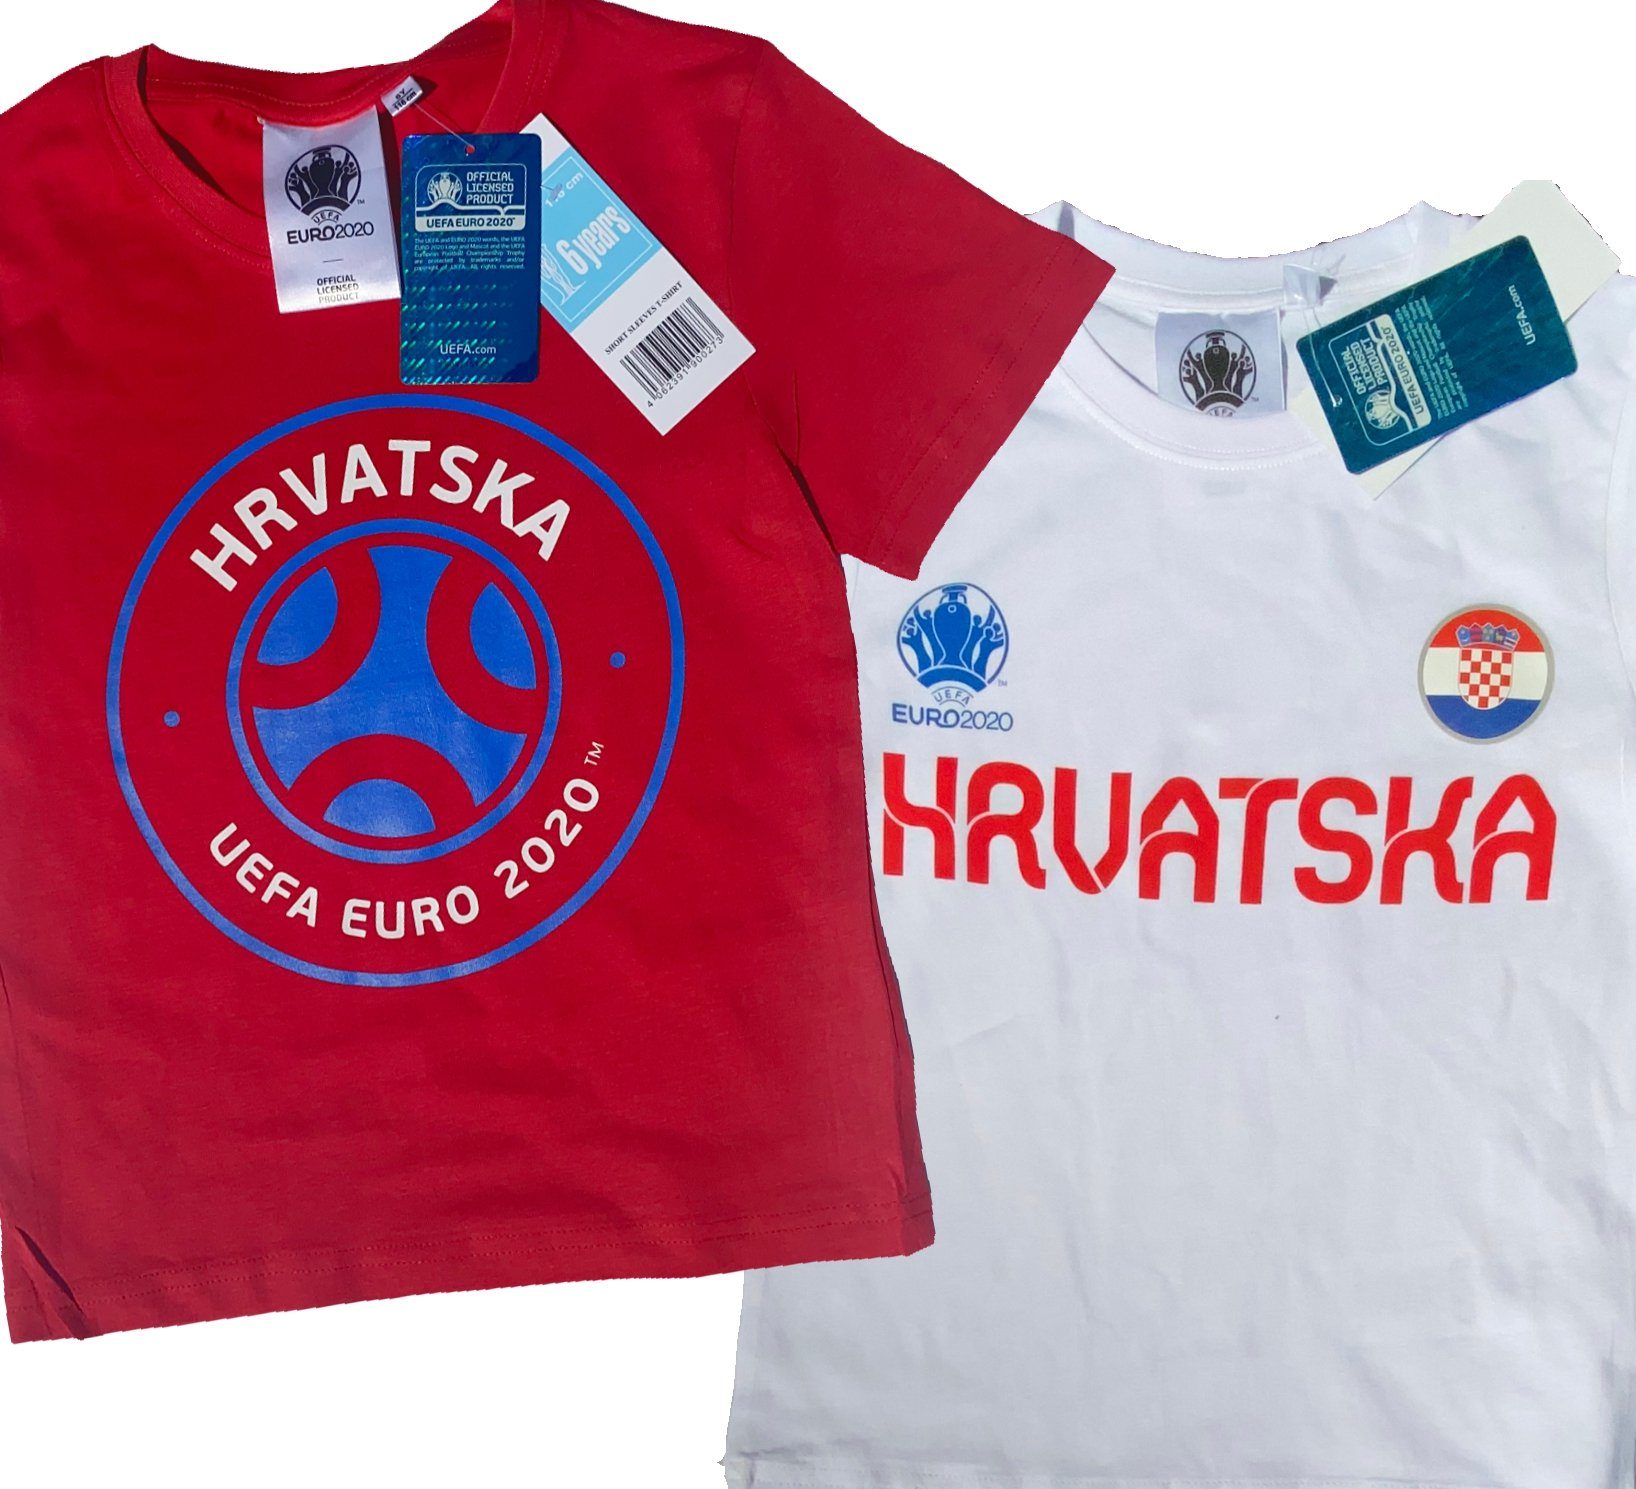 coole-fun-t-shirts T-Shirt 2x Kroatien Kinder T-Shirt EURO 2020 / 2021 Hrvatska Fußball Trikot Shirt DOPPELPACK rot und weiss Europameisterschaft Jungen + Mädchen 6 8 10 12 Jahre Gr.116 128 140 152 (2er-Pack)